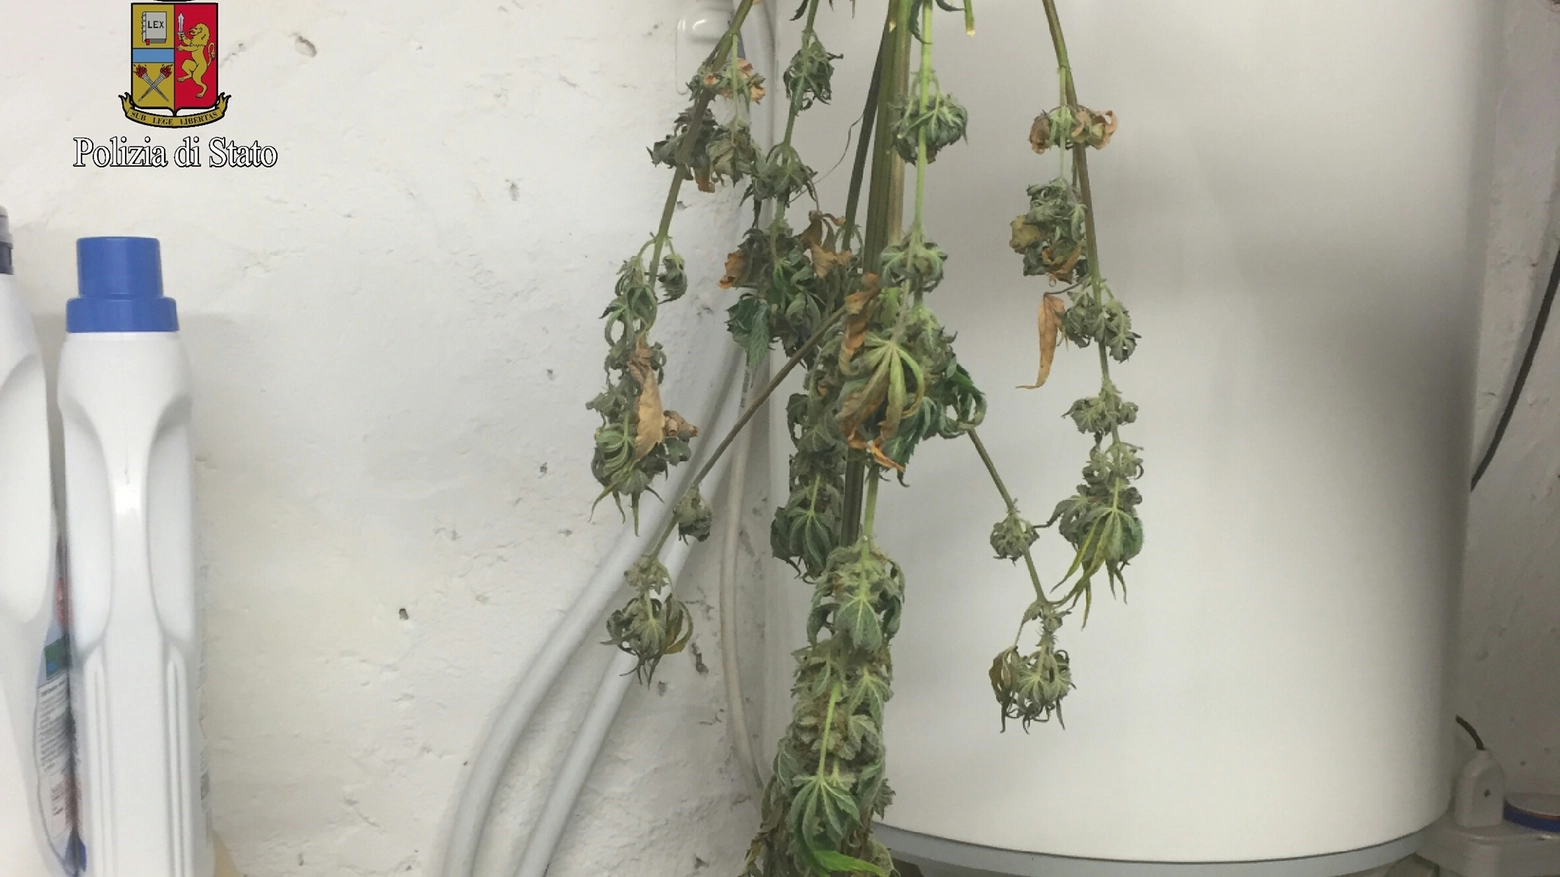 Una parte della "serra" per coltivare marijuana